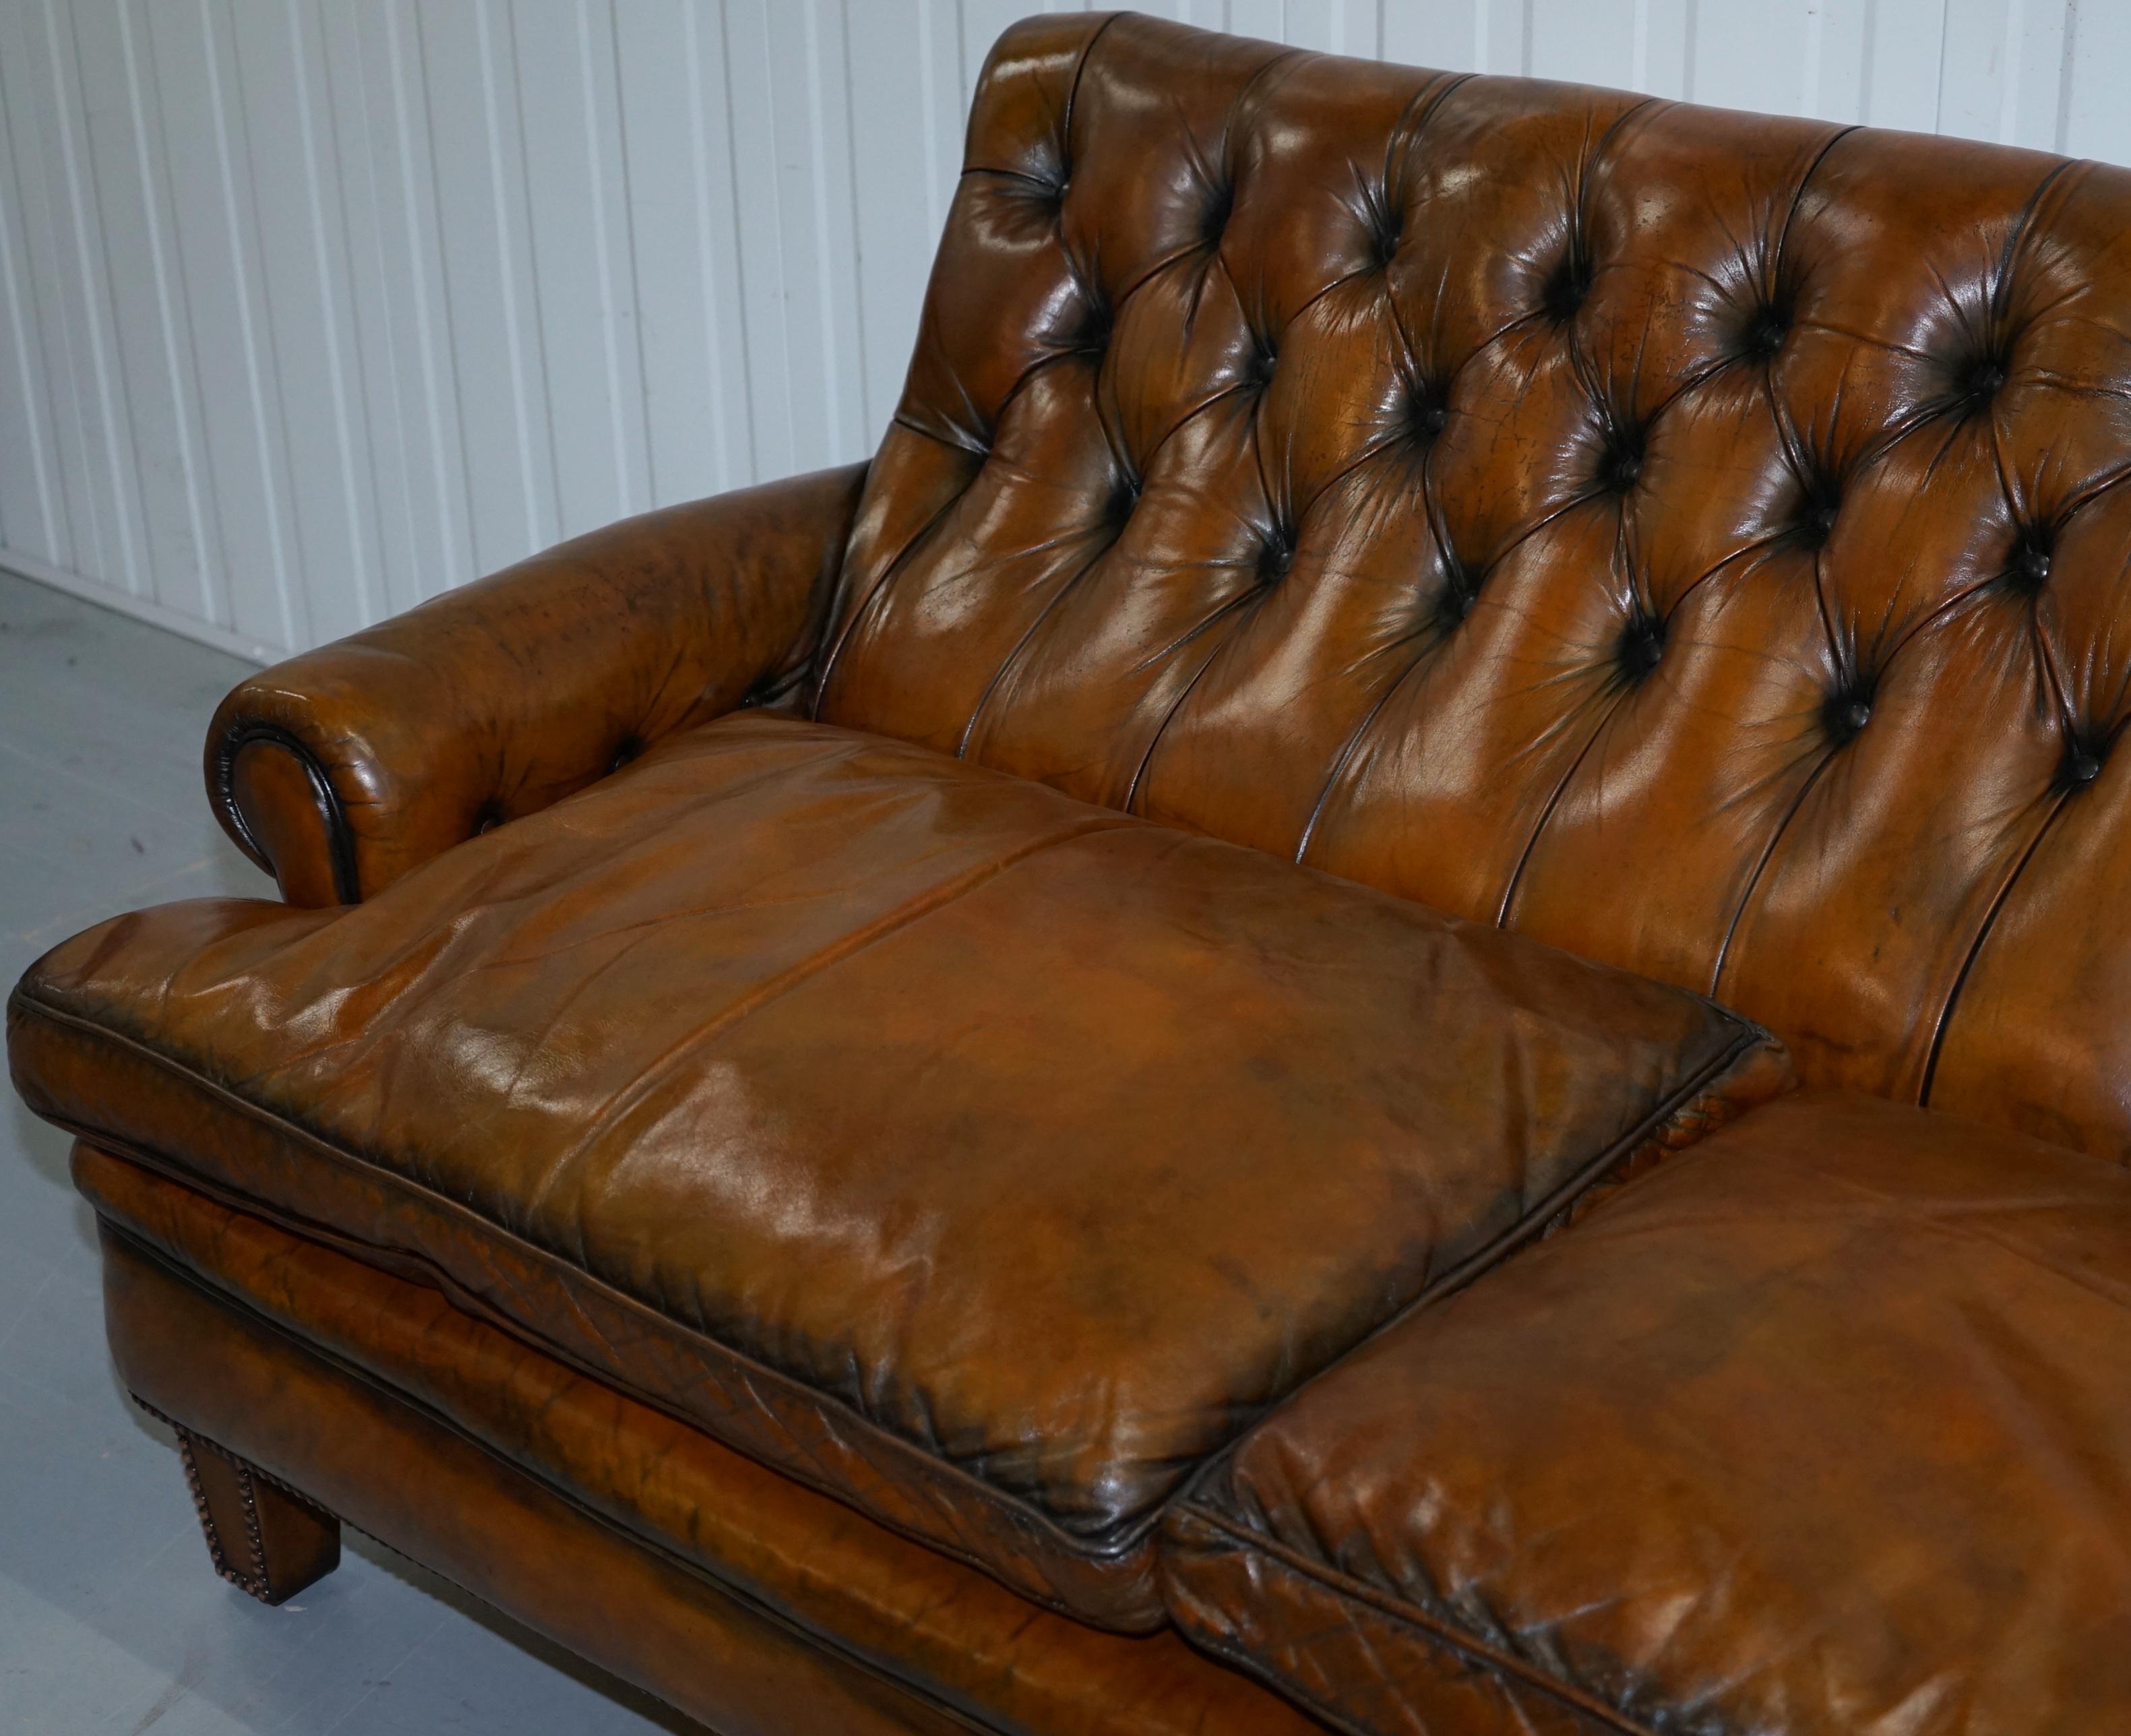 aged leather sofa